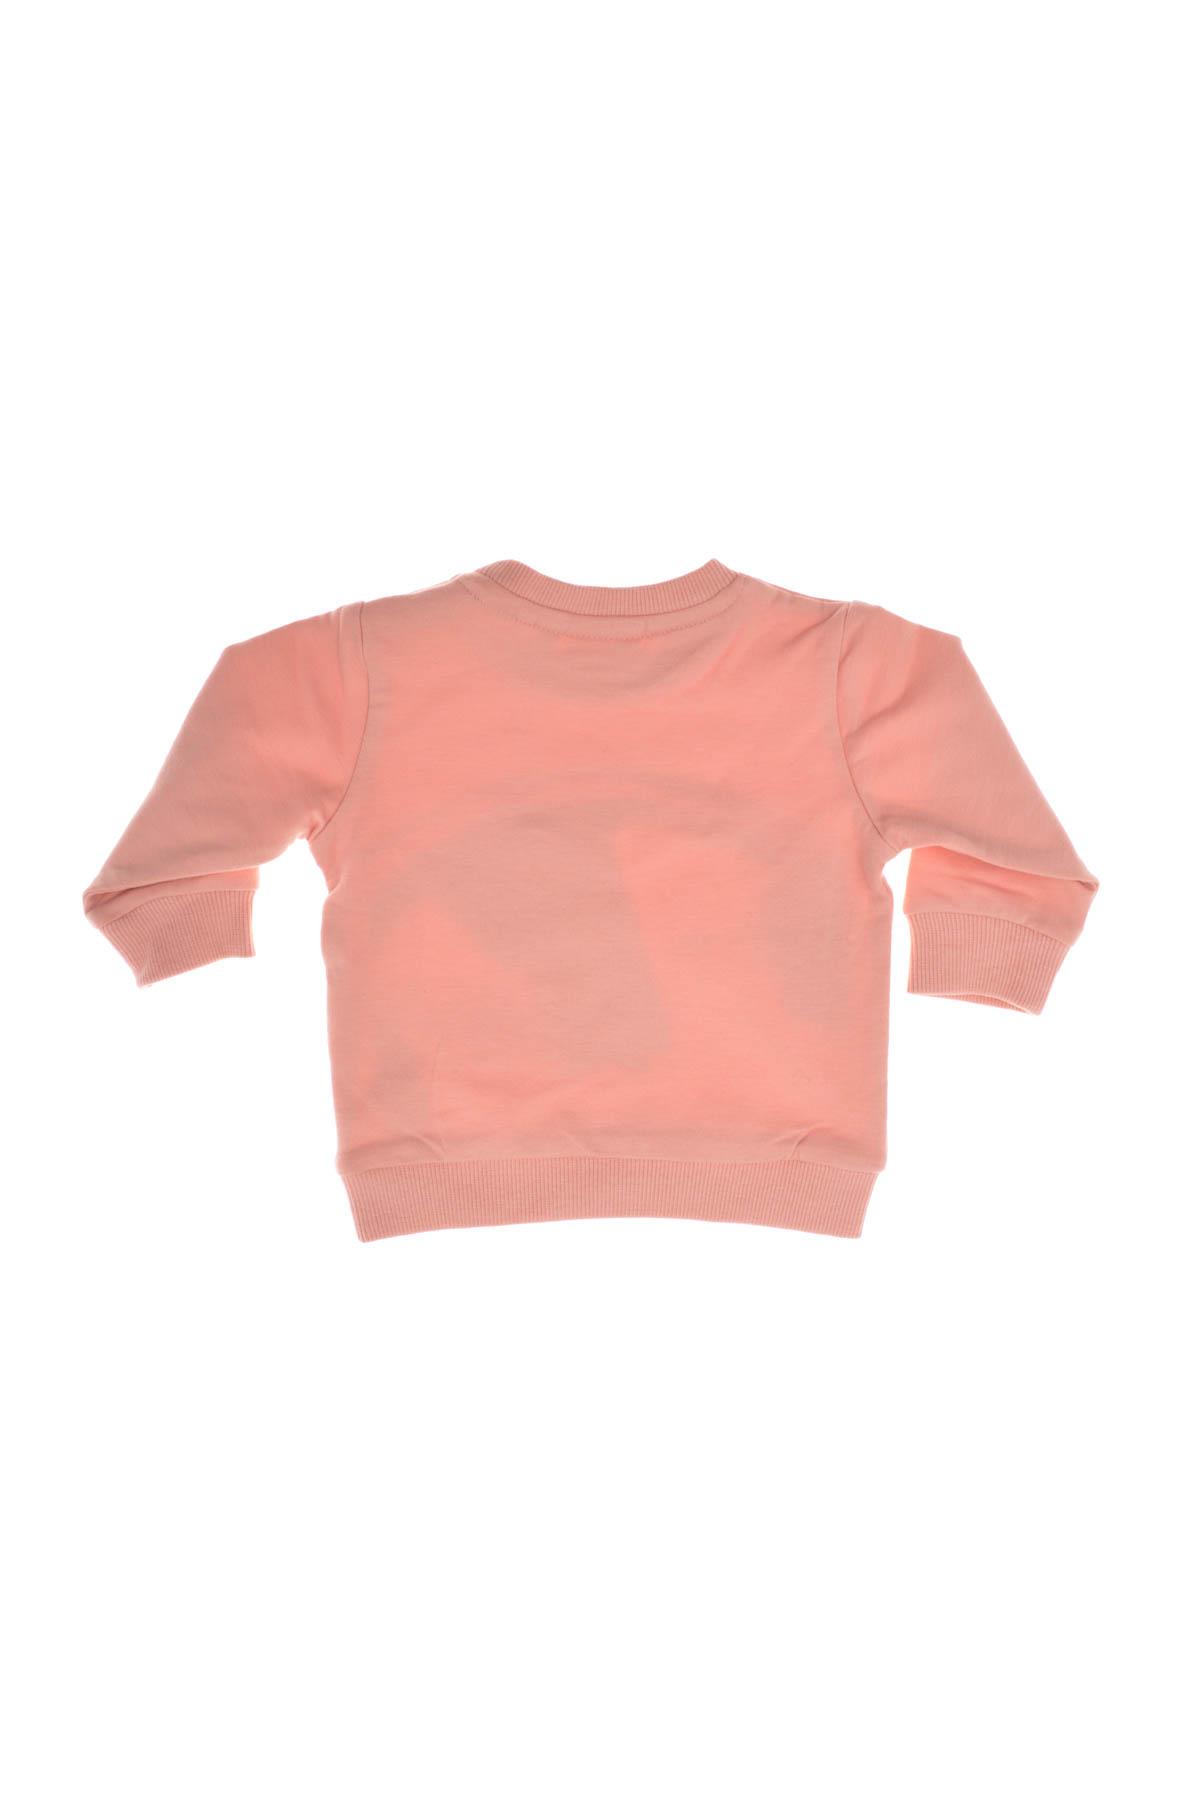 Bluza pentru bebeluș fată - Name It - 1